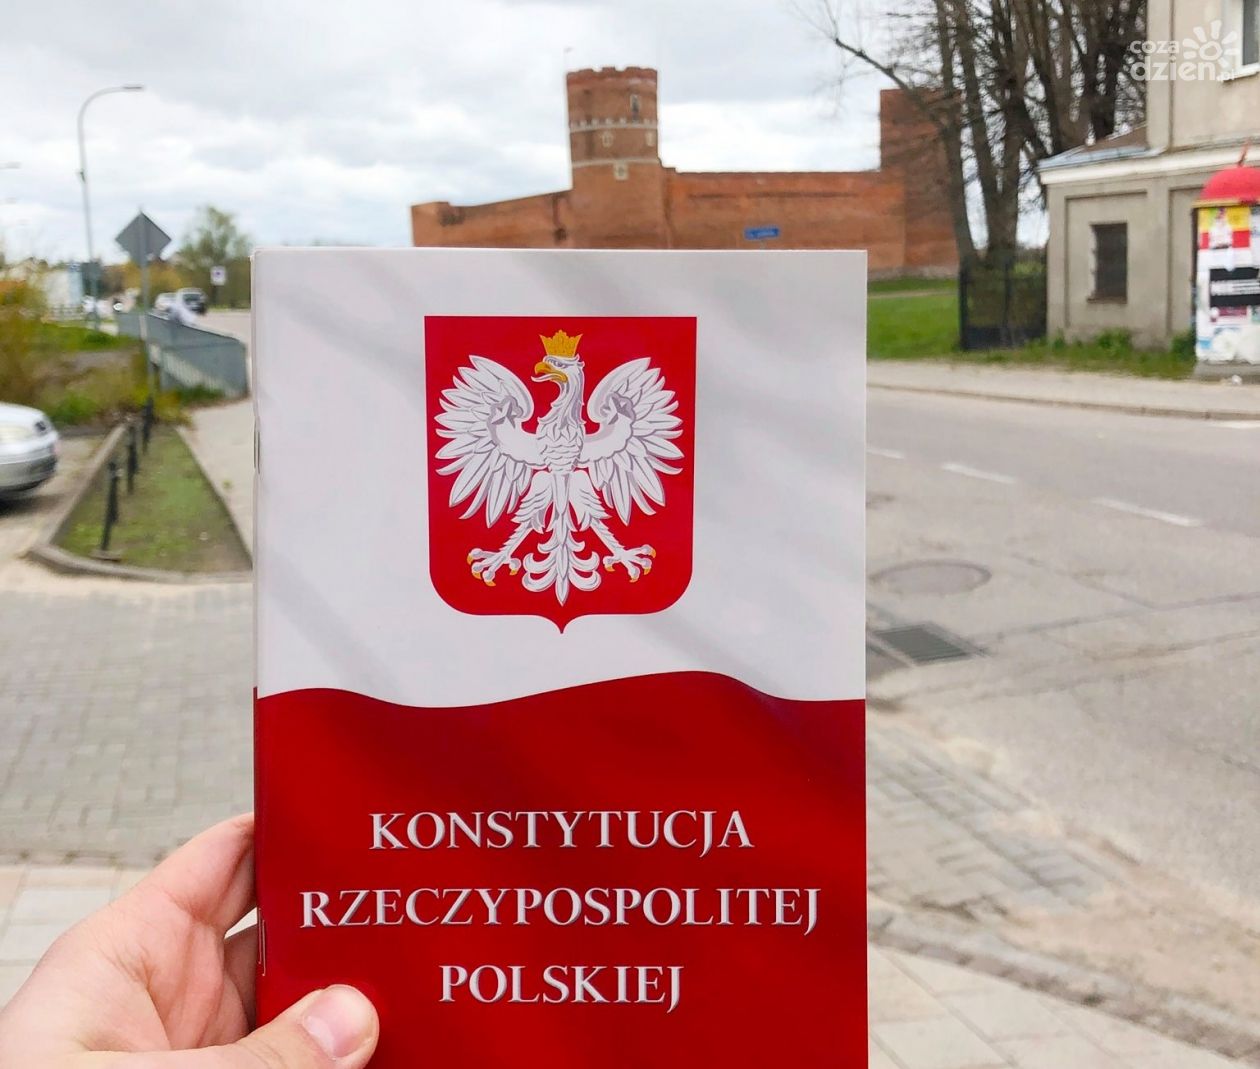 Konstytucja RP powędrowała dziś ulicami Ciechanowa!